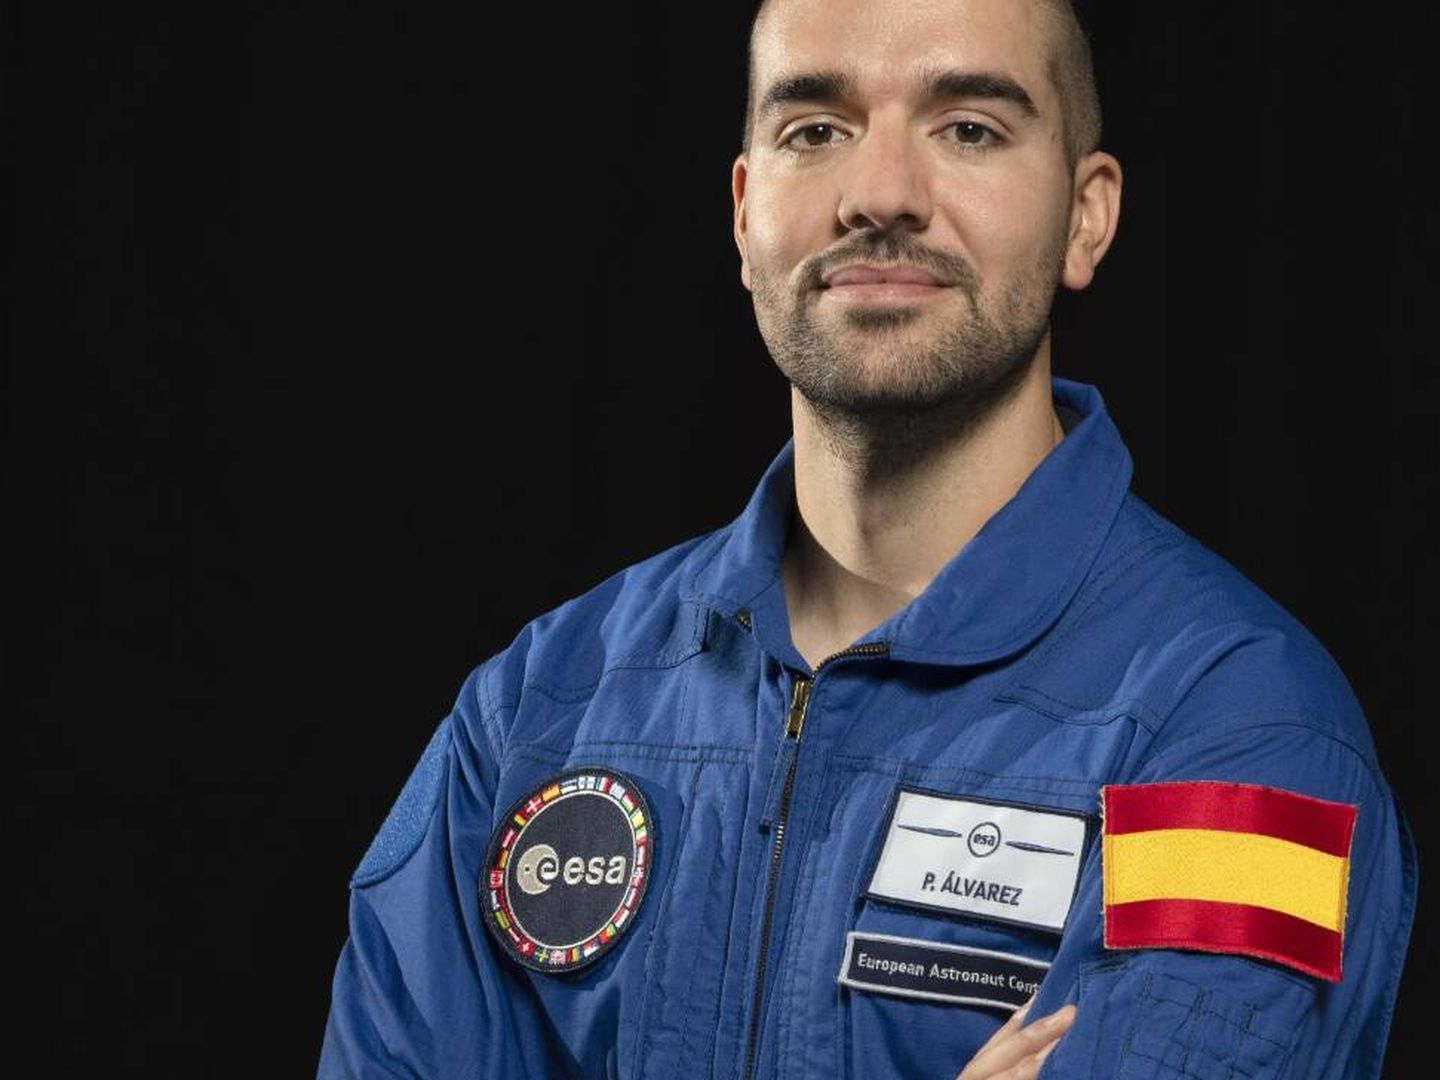 El astronauta Pablo Álvarez. (ESA)